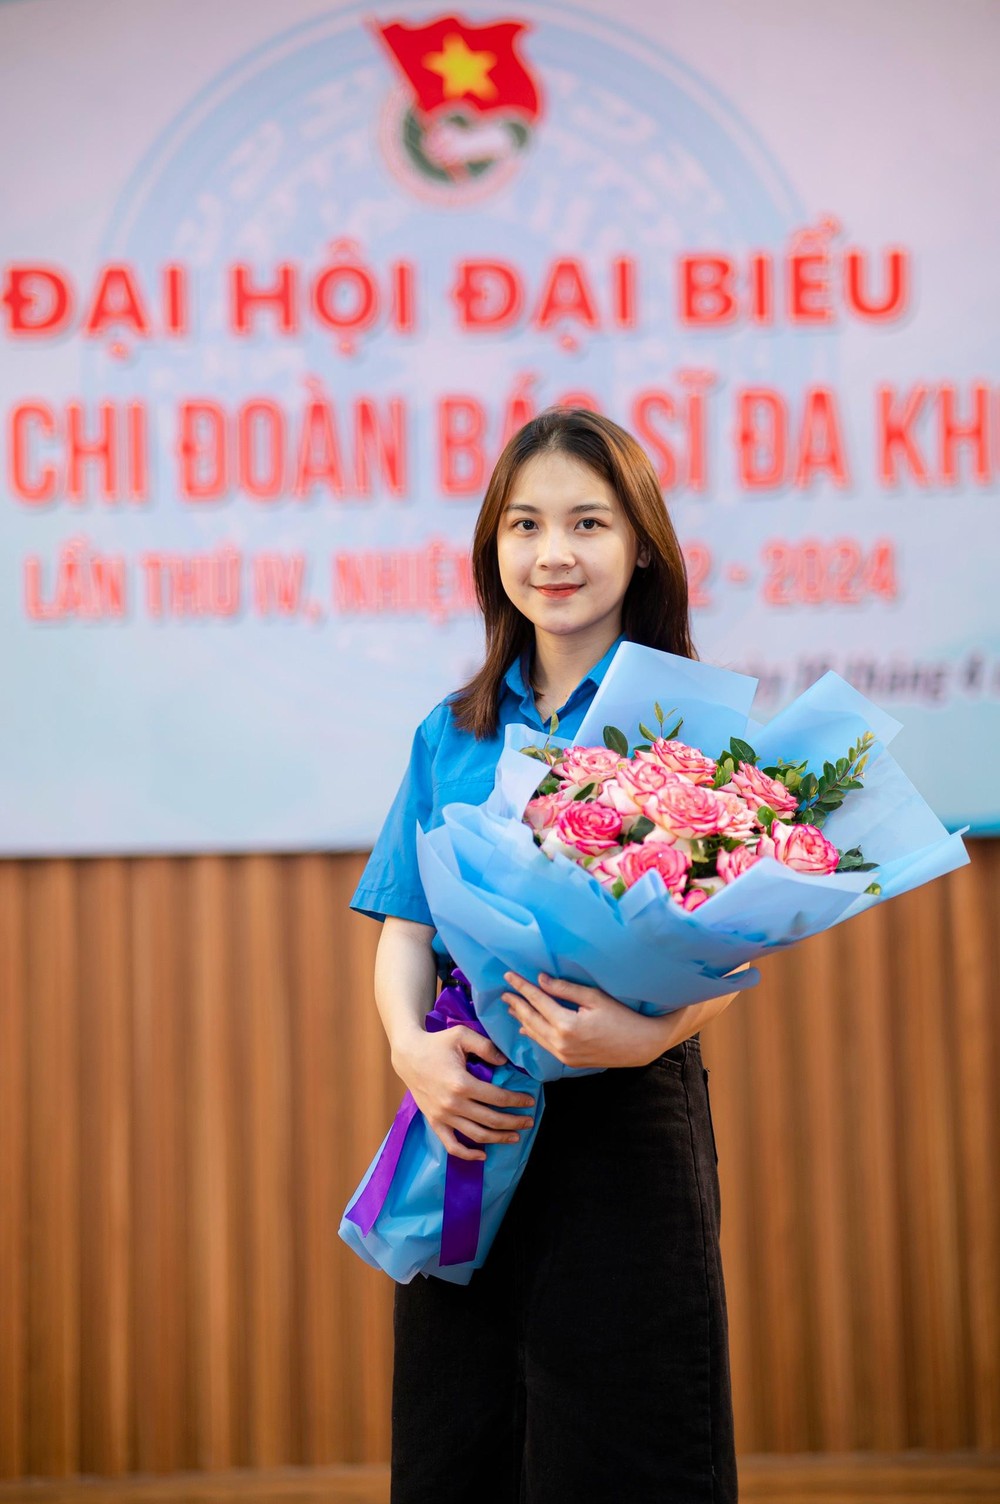 Nữ sinh tài sắc vẹn toàn của trường Đại học Y Dược - Đại học Thái Nguyên - Ảnh 2.